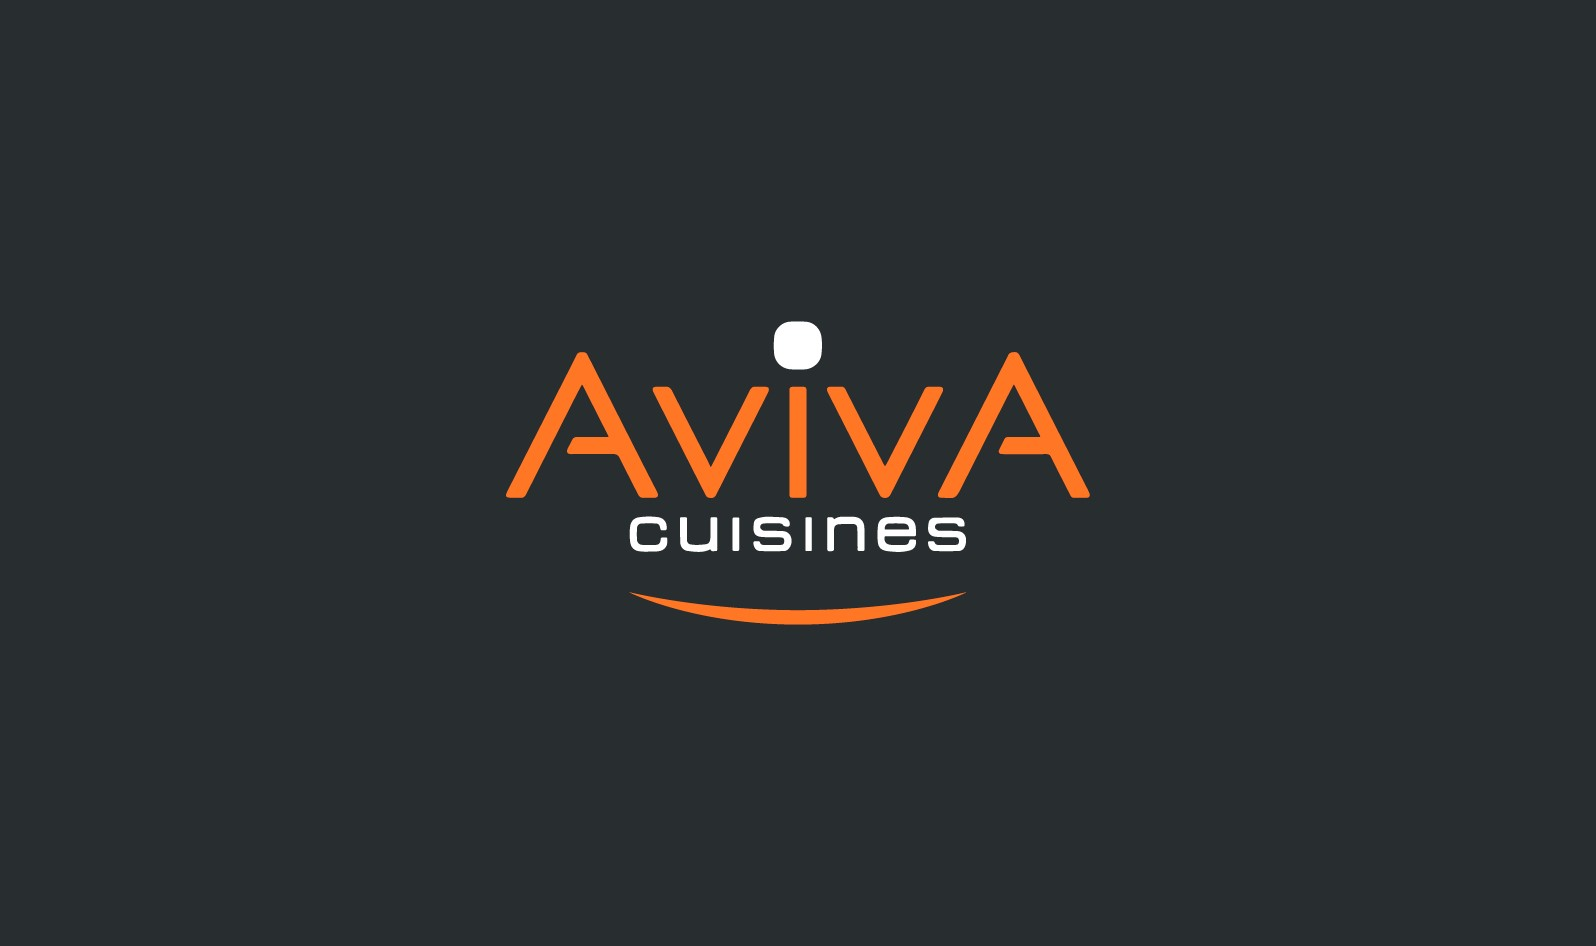 Aviva cuisines